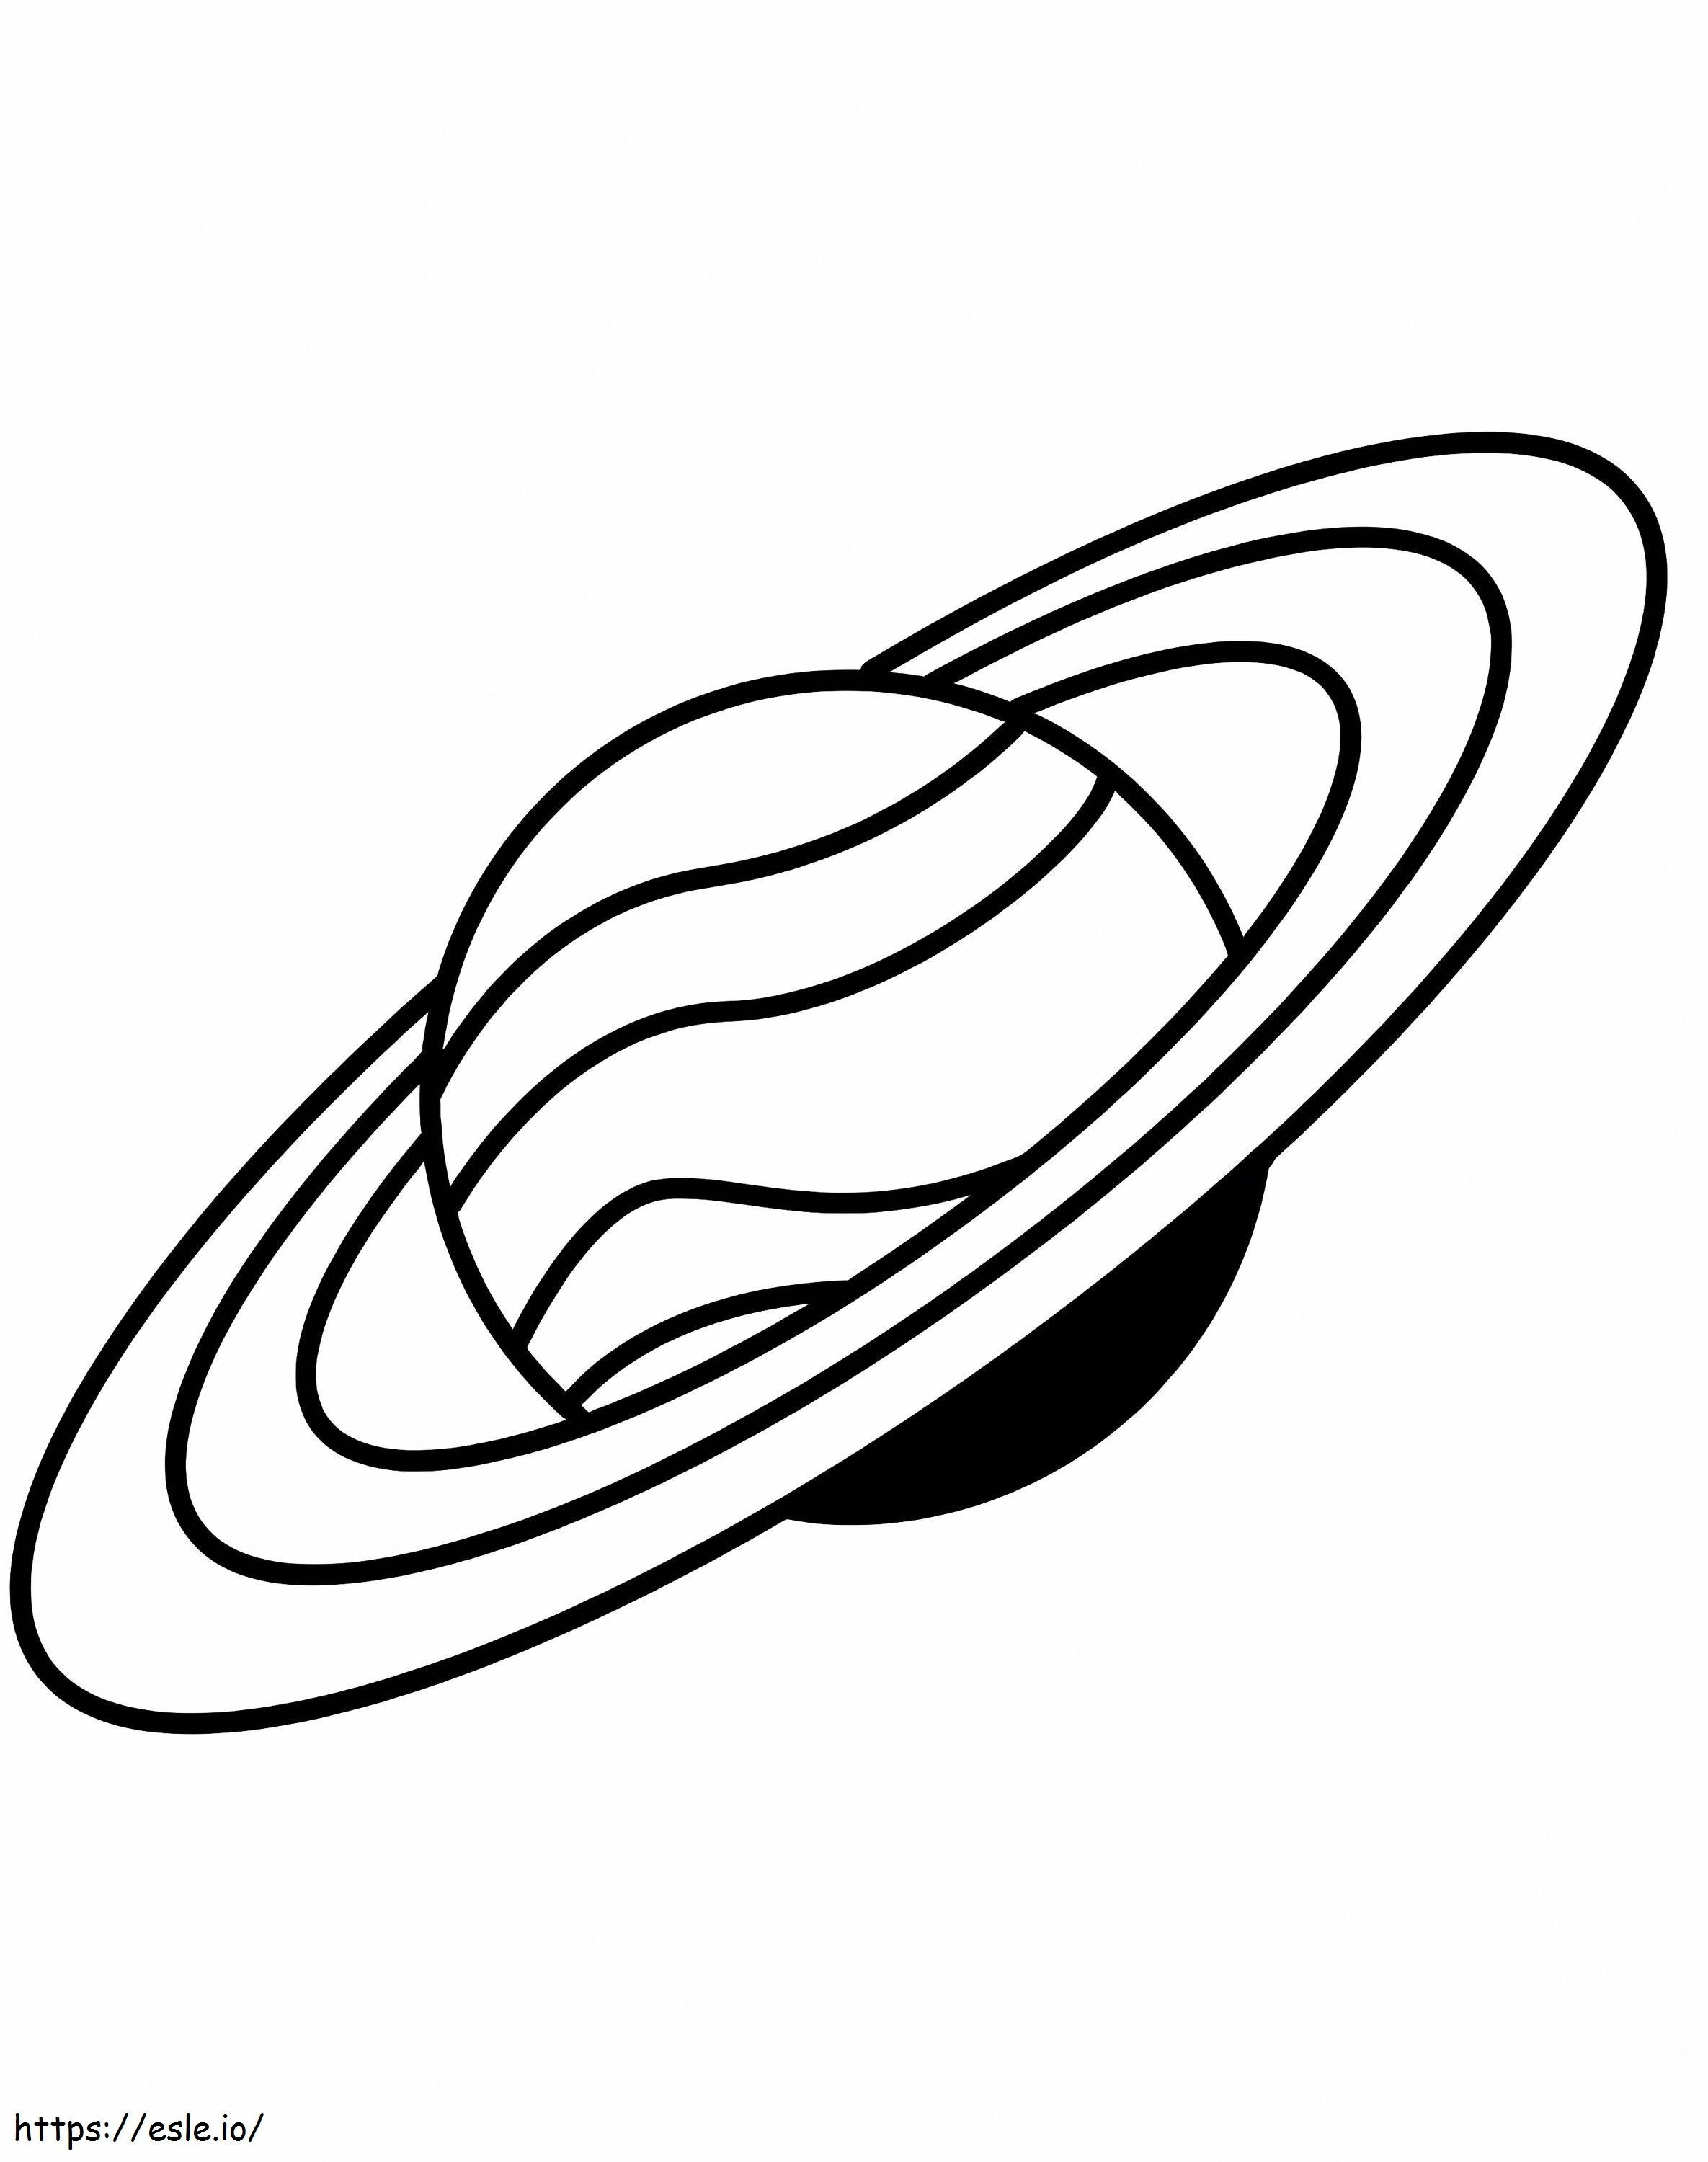 Saturno semplice 1 da colorare